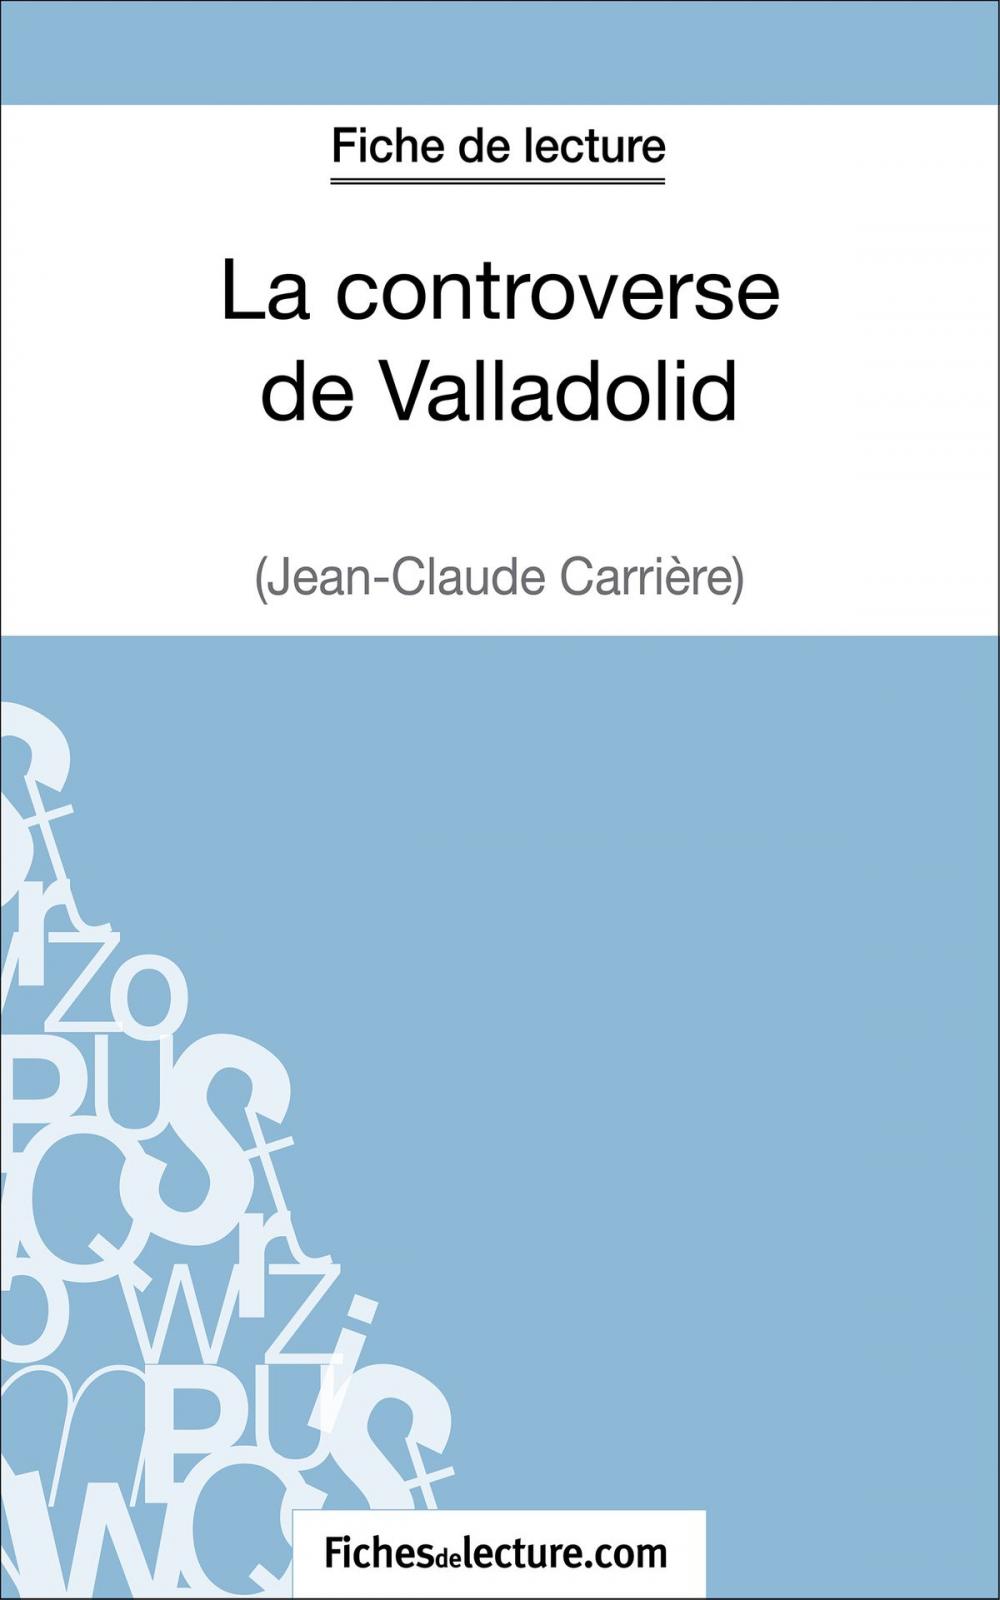 Big bigCover of La controverse de Valladolid de Jean-Claude Carrière (Fiche de lecture)